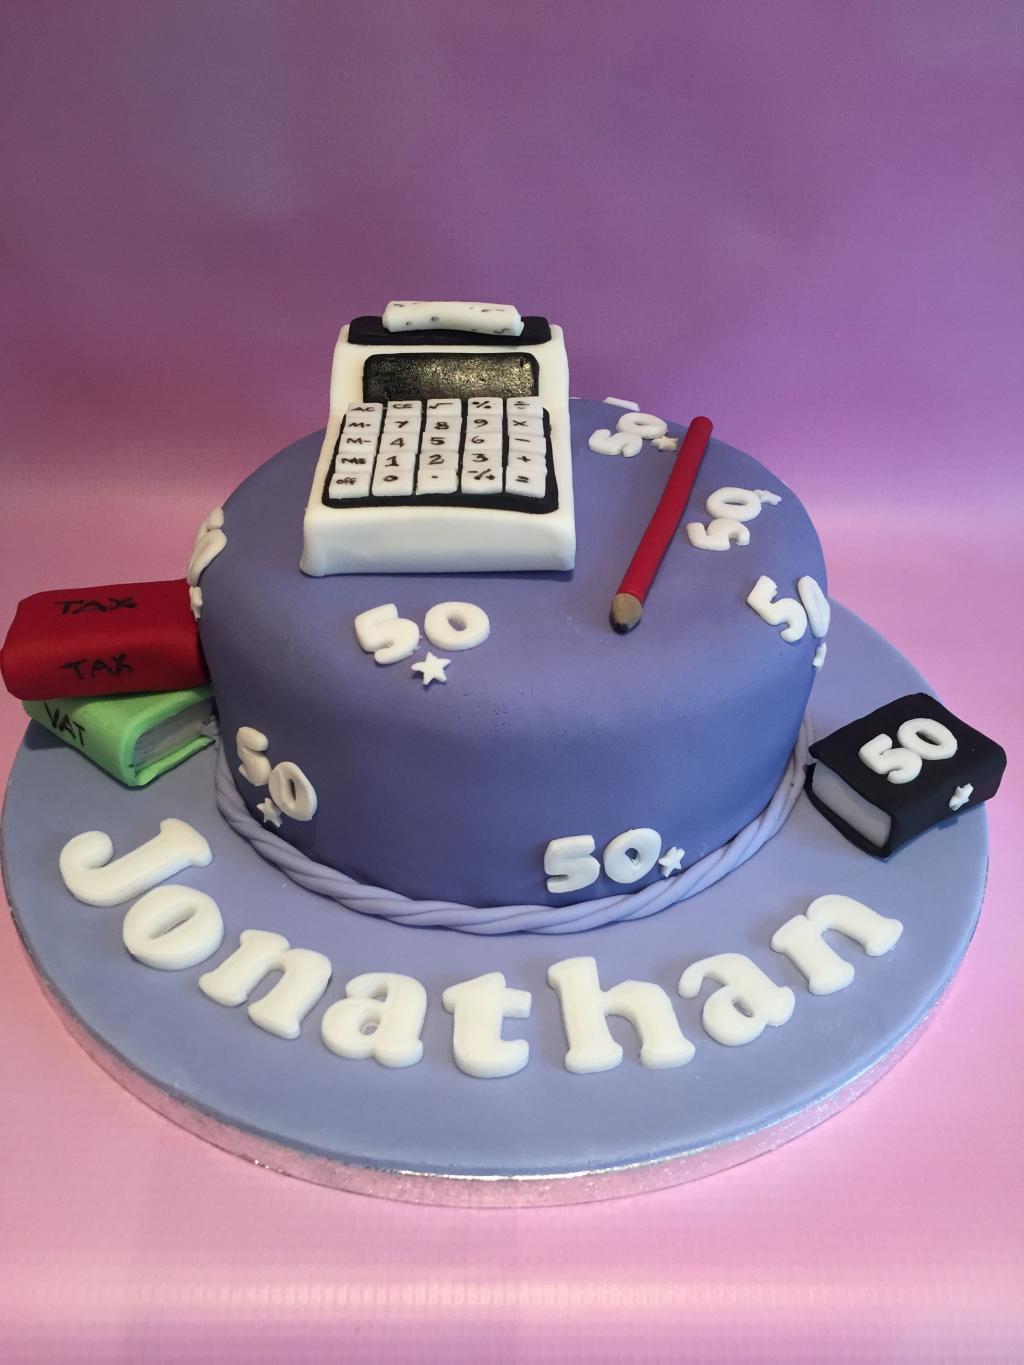 عکس مدل کیک ماشین حساب جدید برای روز حسابداری